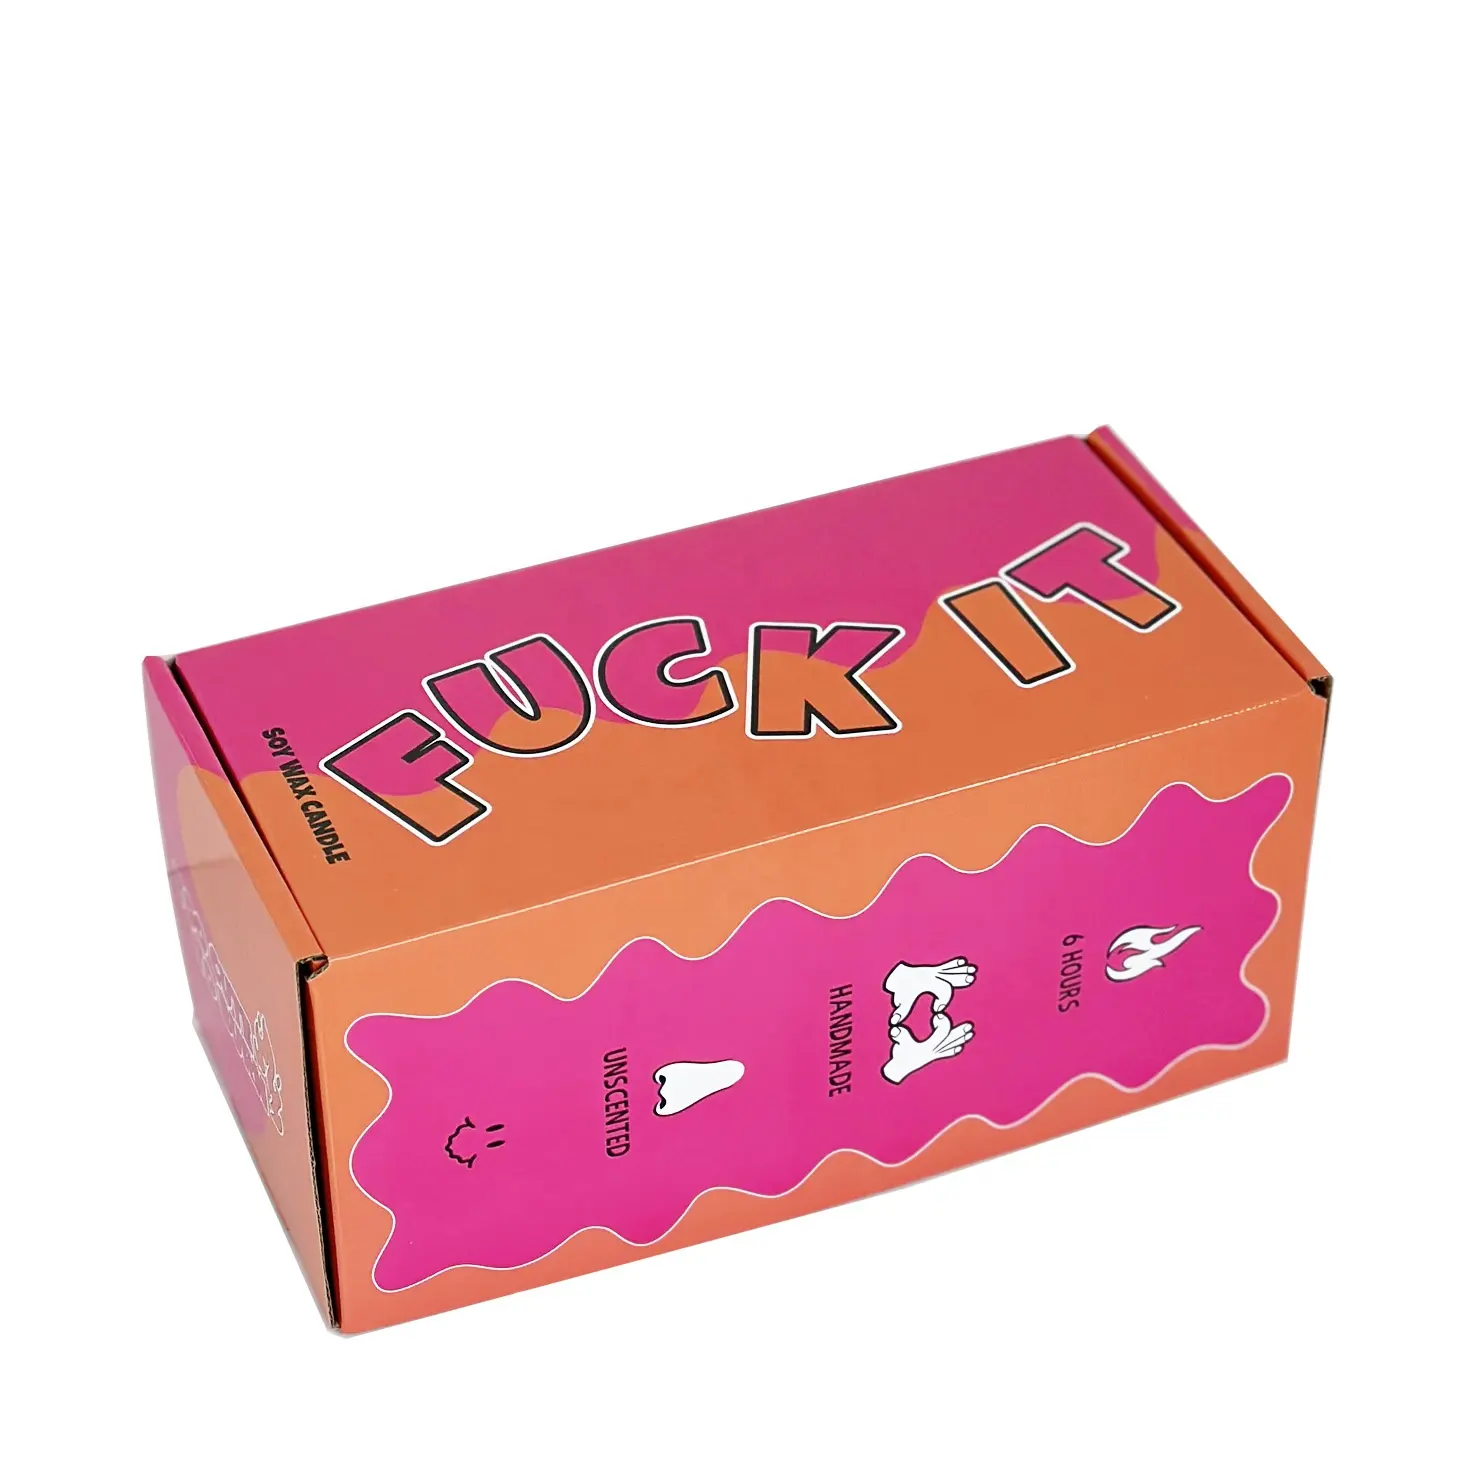 Yeni ürün elektronik kek için karton kutu ambalajı kedi çin toptan karton kutu ambalajı